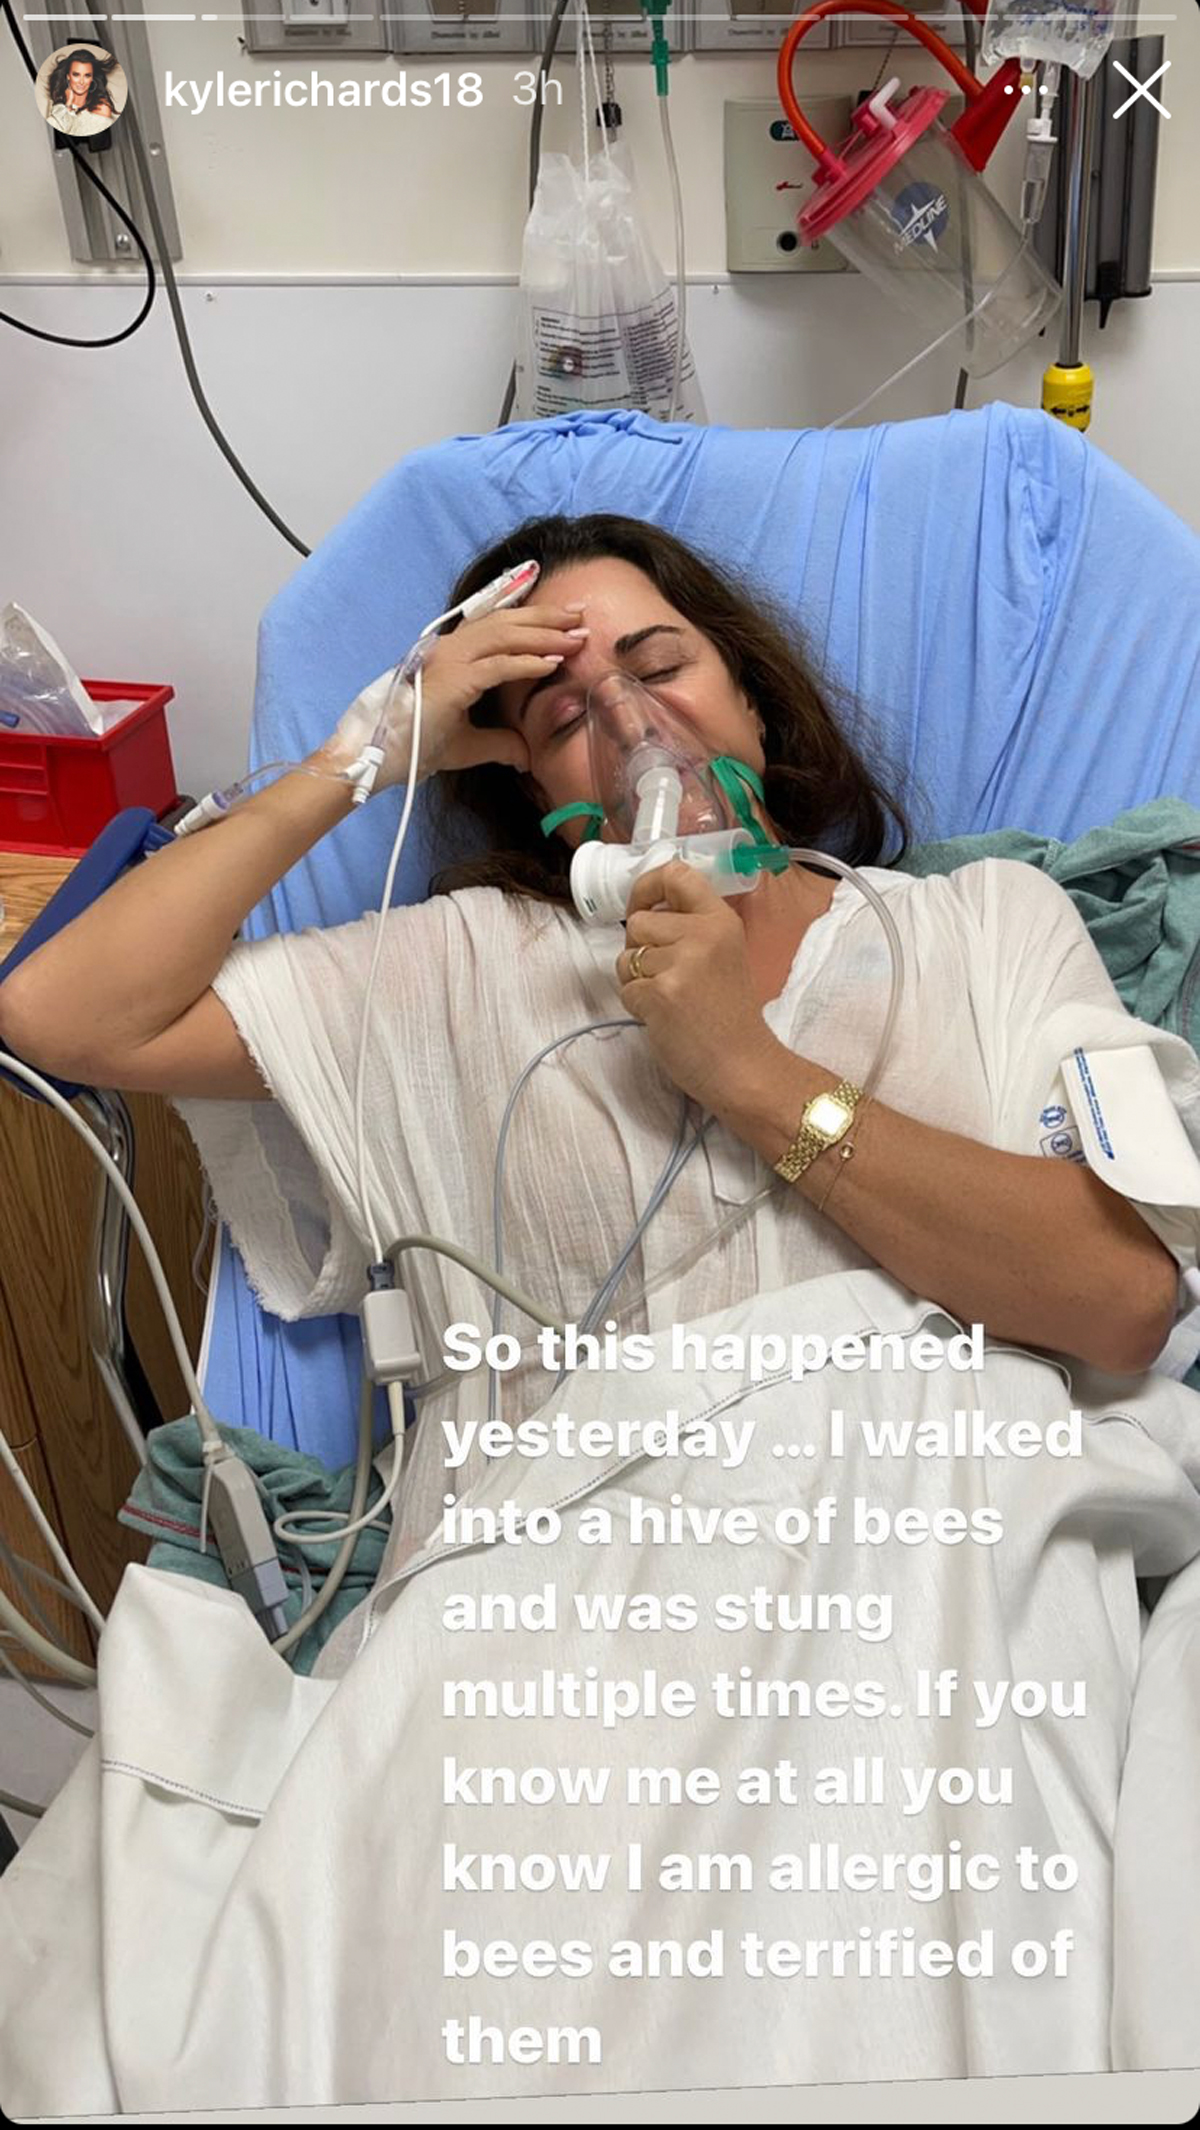 molto spaventoso!  La star di RHOBH Kyle Richards è stata ricoverata in ospedale dopo essere entrata accidentalmente in un alveare!